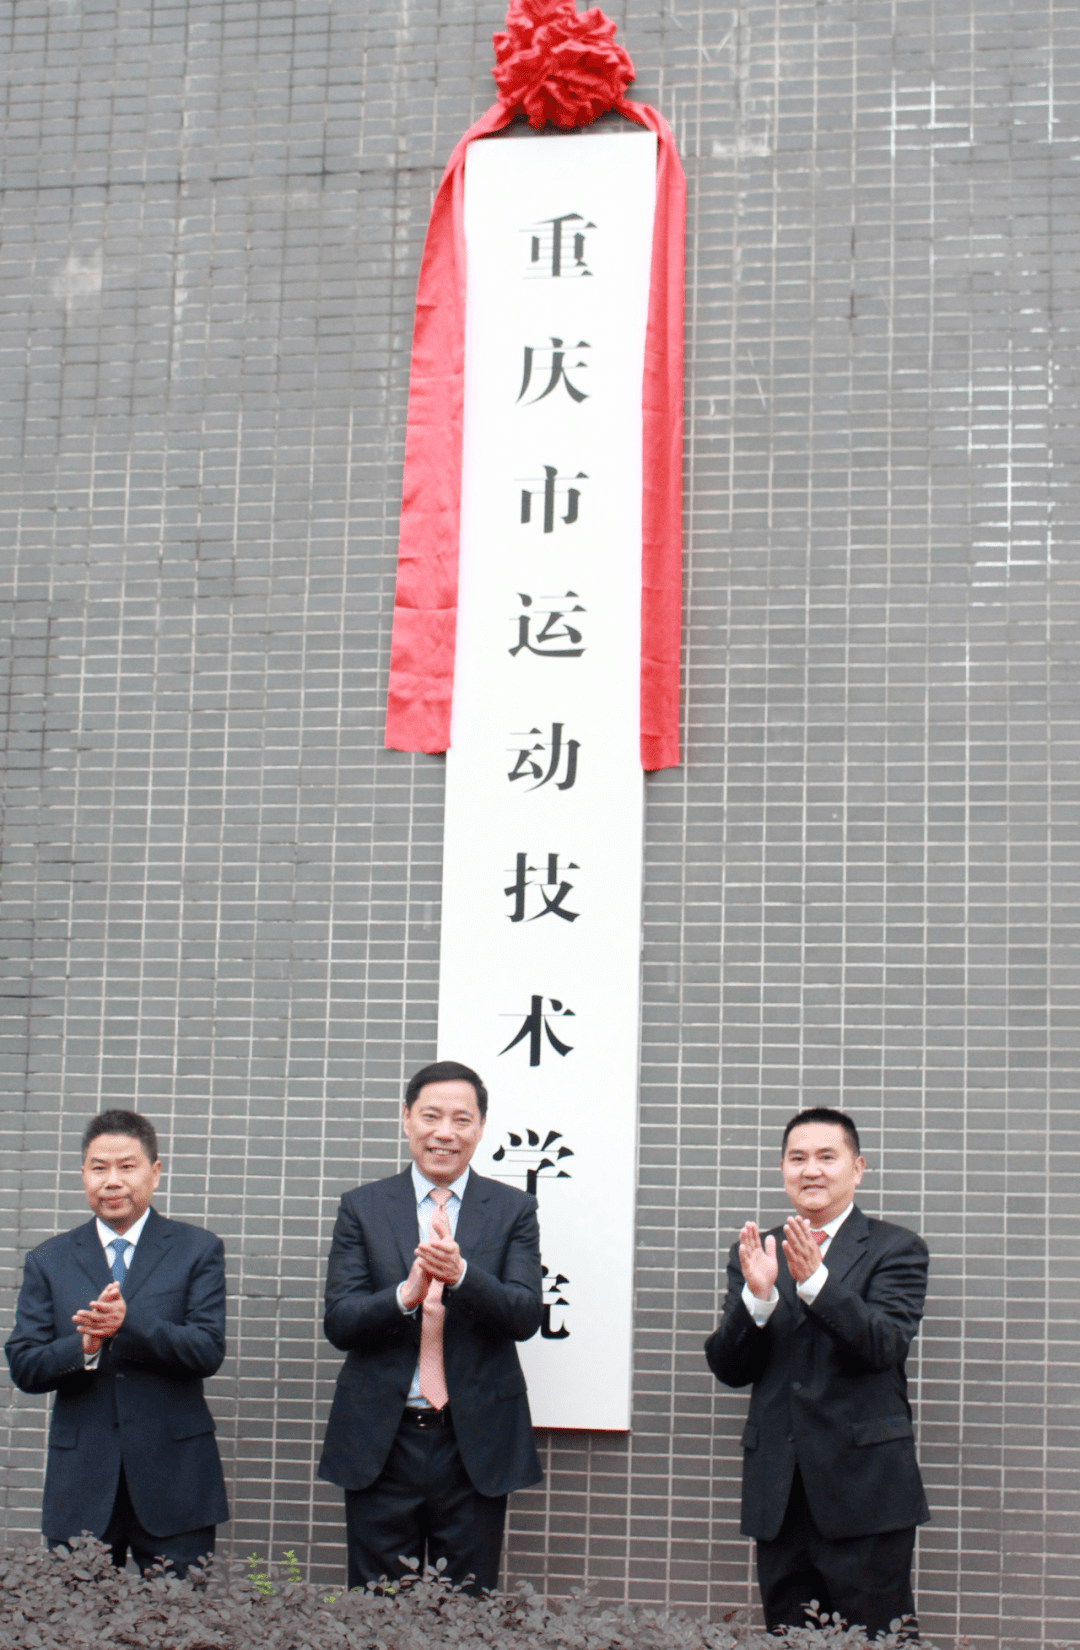 重庆运动技术学院图片